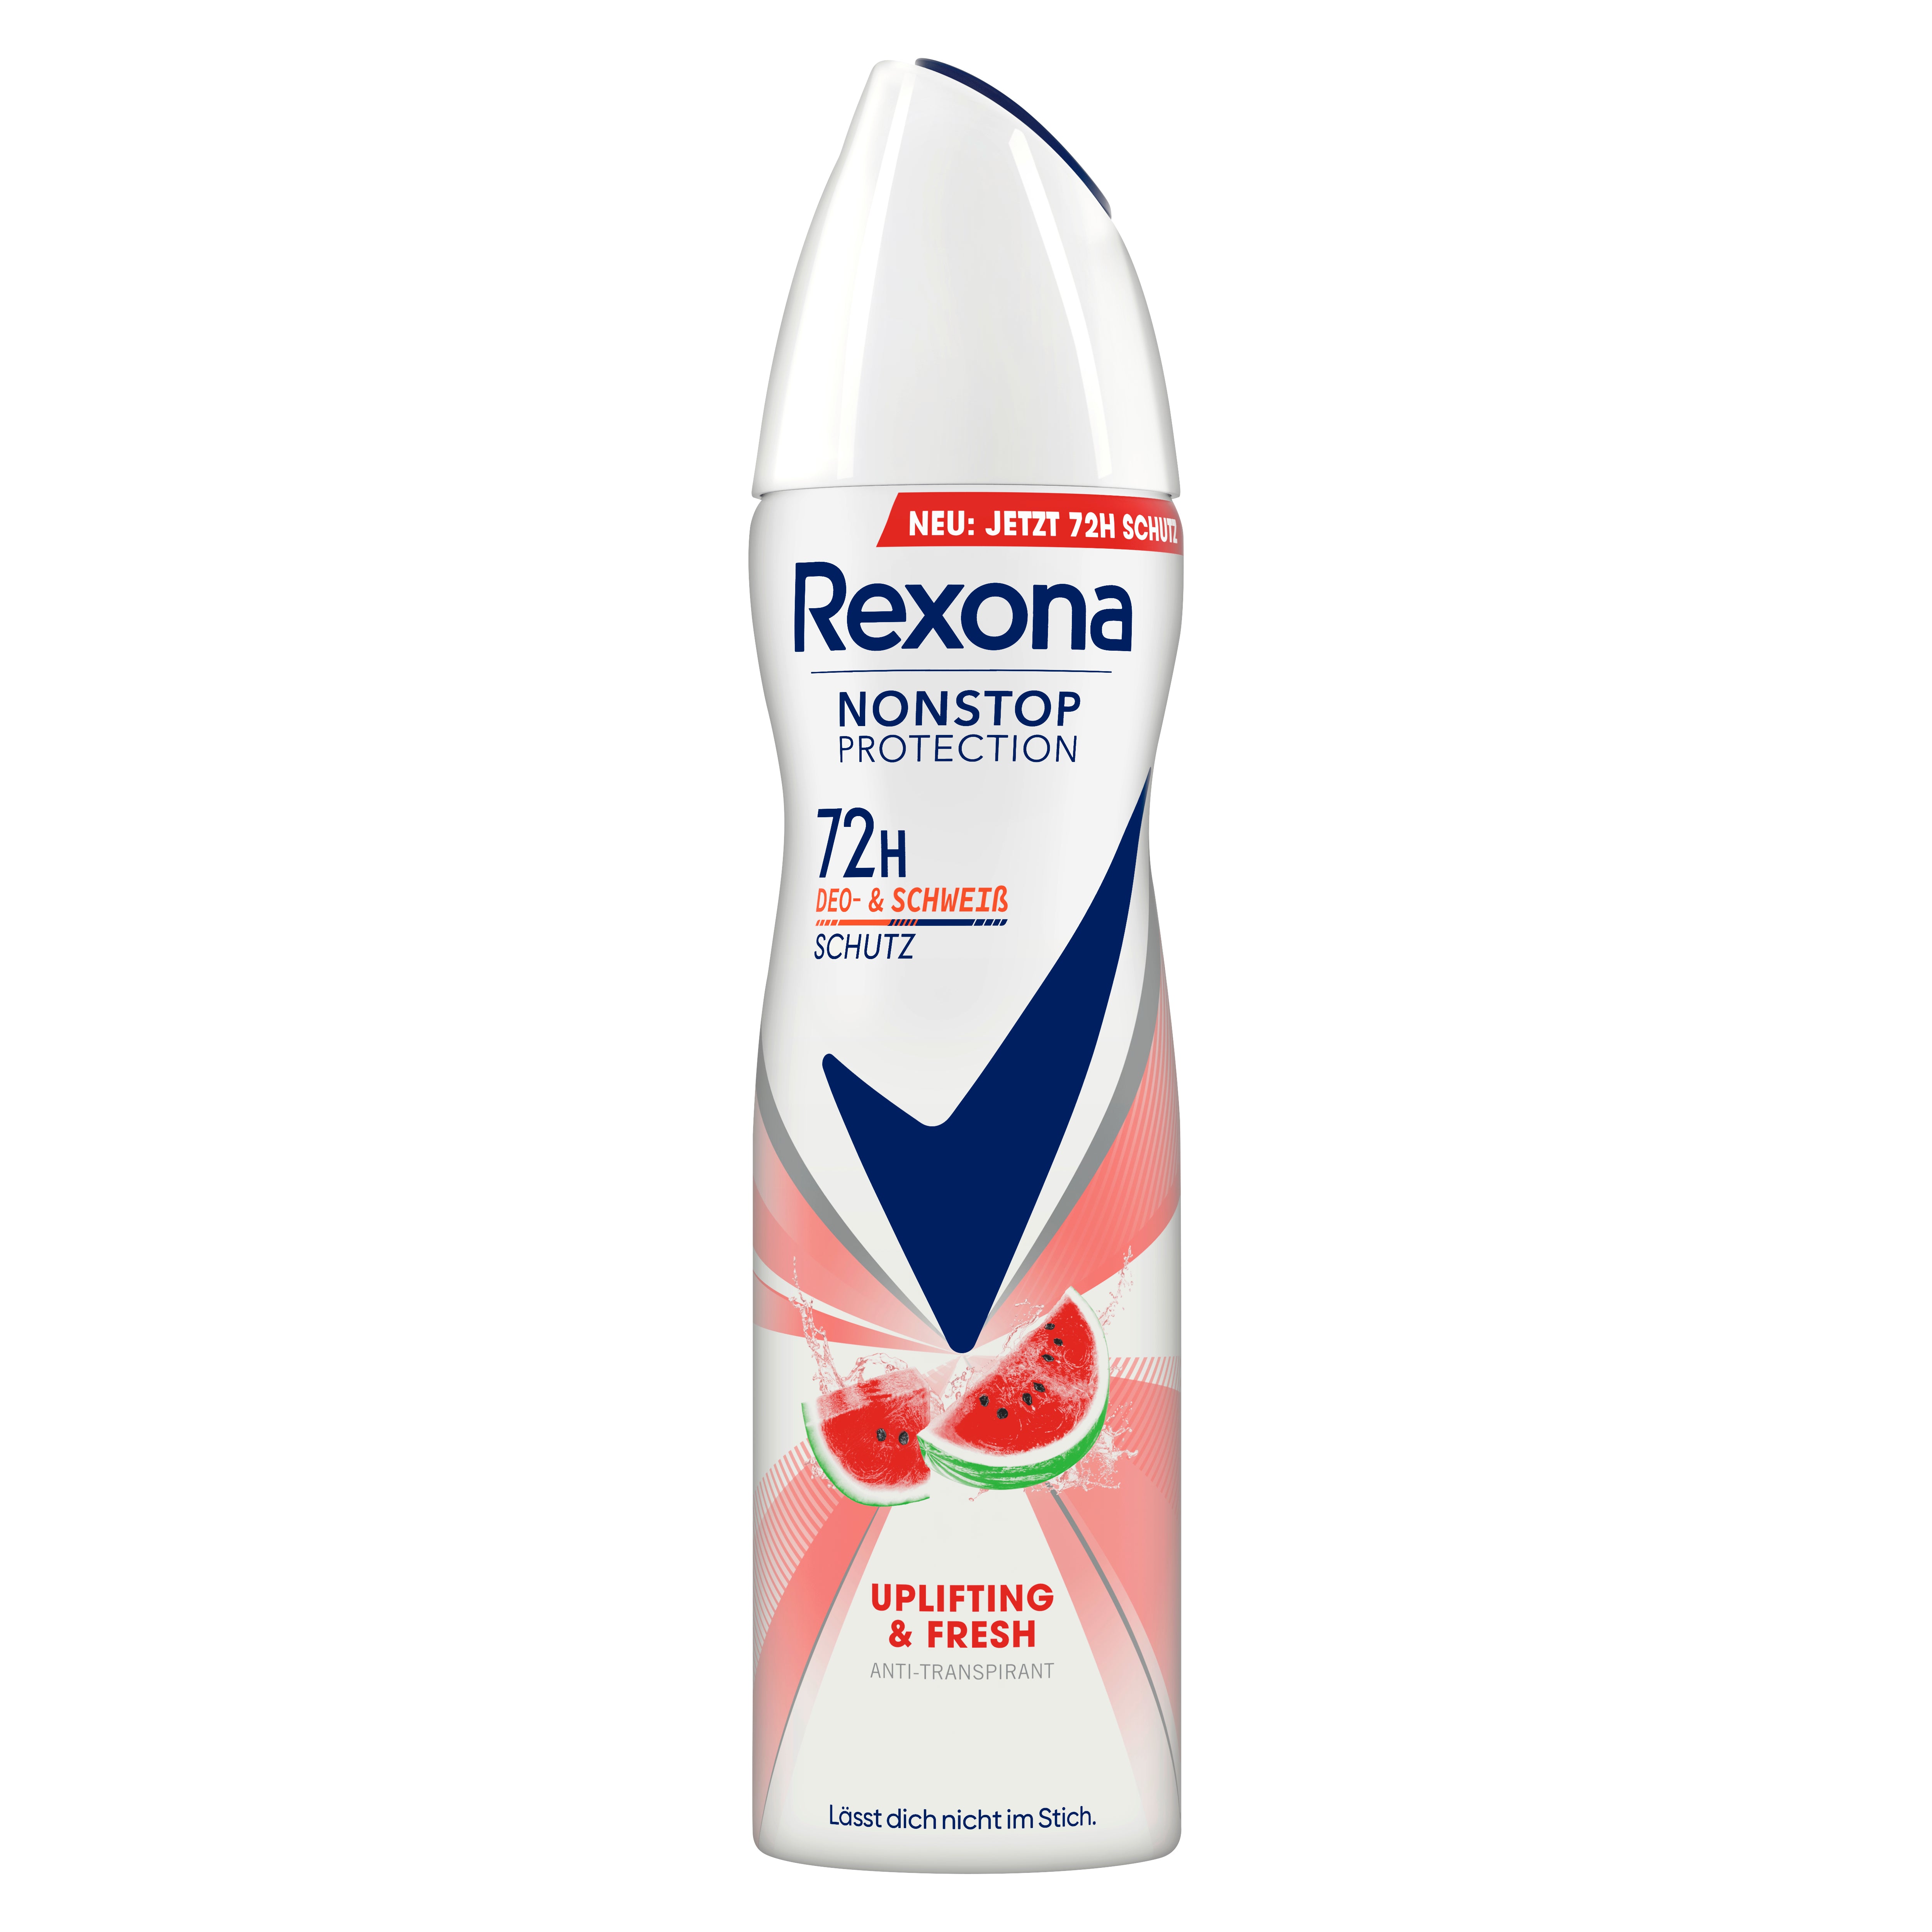 Rexona Nonstop Protection Deospray Uplifting & Fresh Anti Transpirant mit 72 Stunden Schutz vor Schweiß und Körpergeruch 150 ml